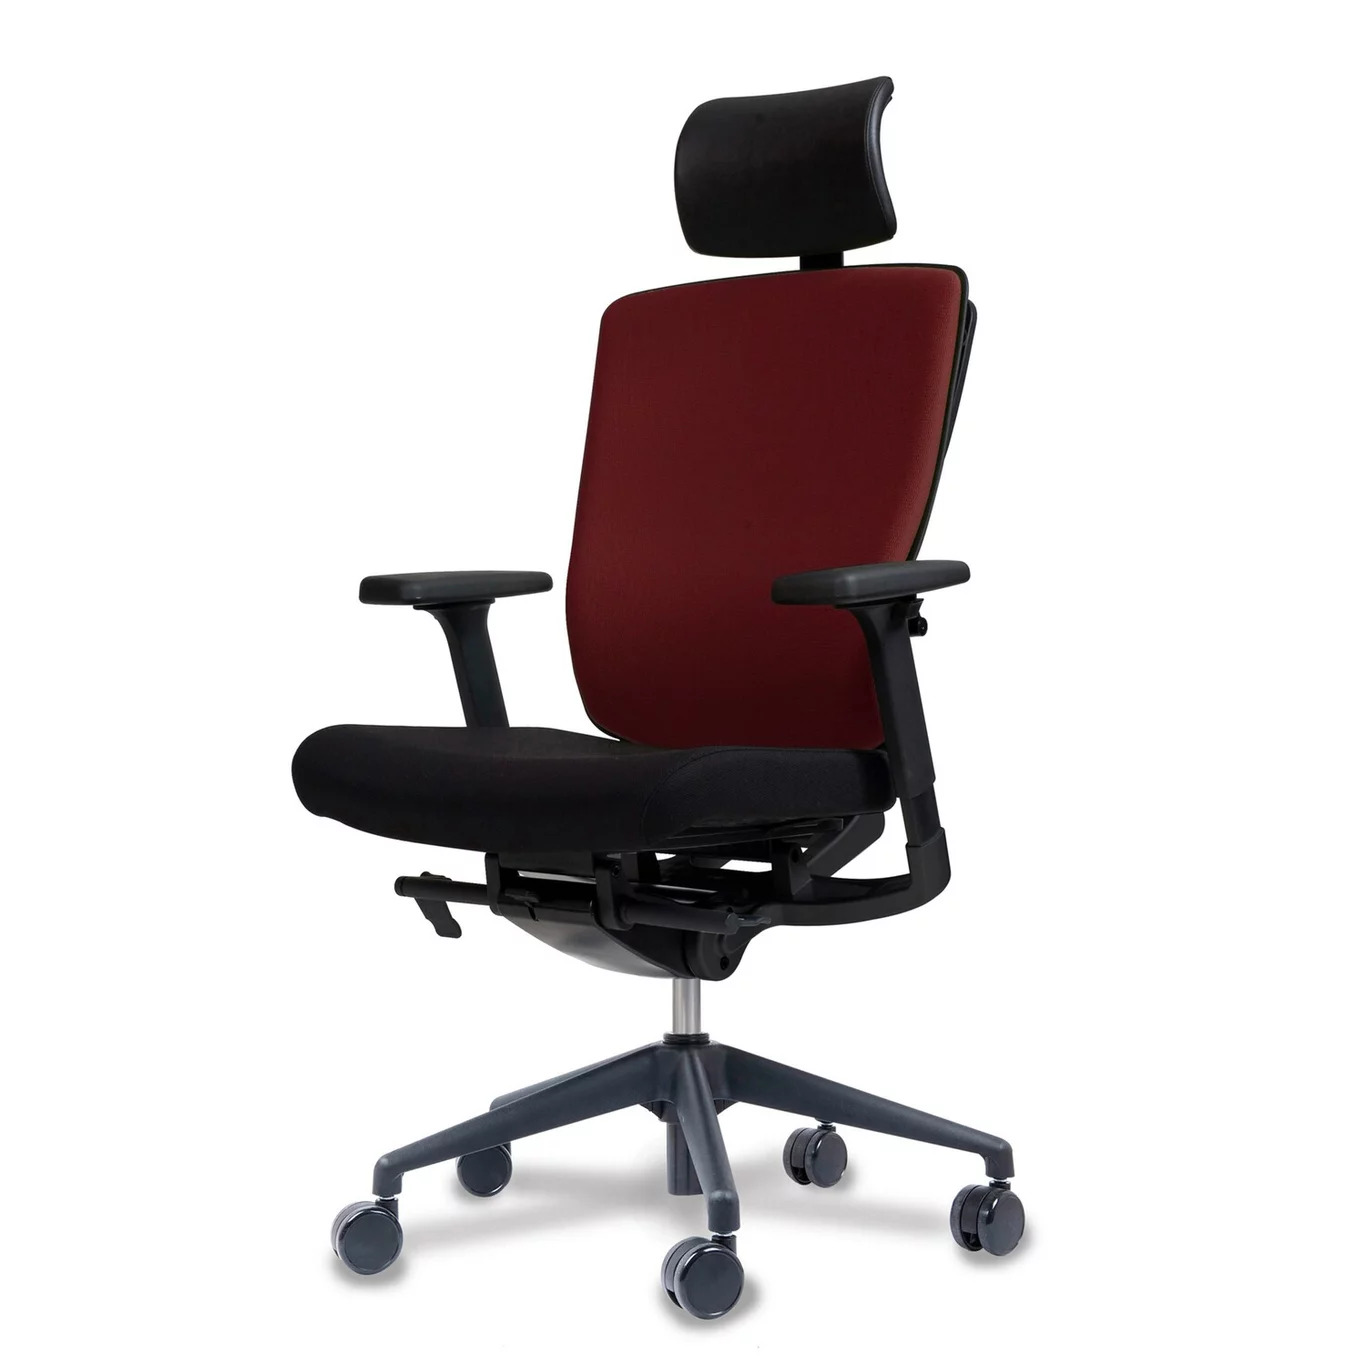 Эргономичное кресло Schairs AEON-P01B (каркас черный)